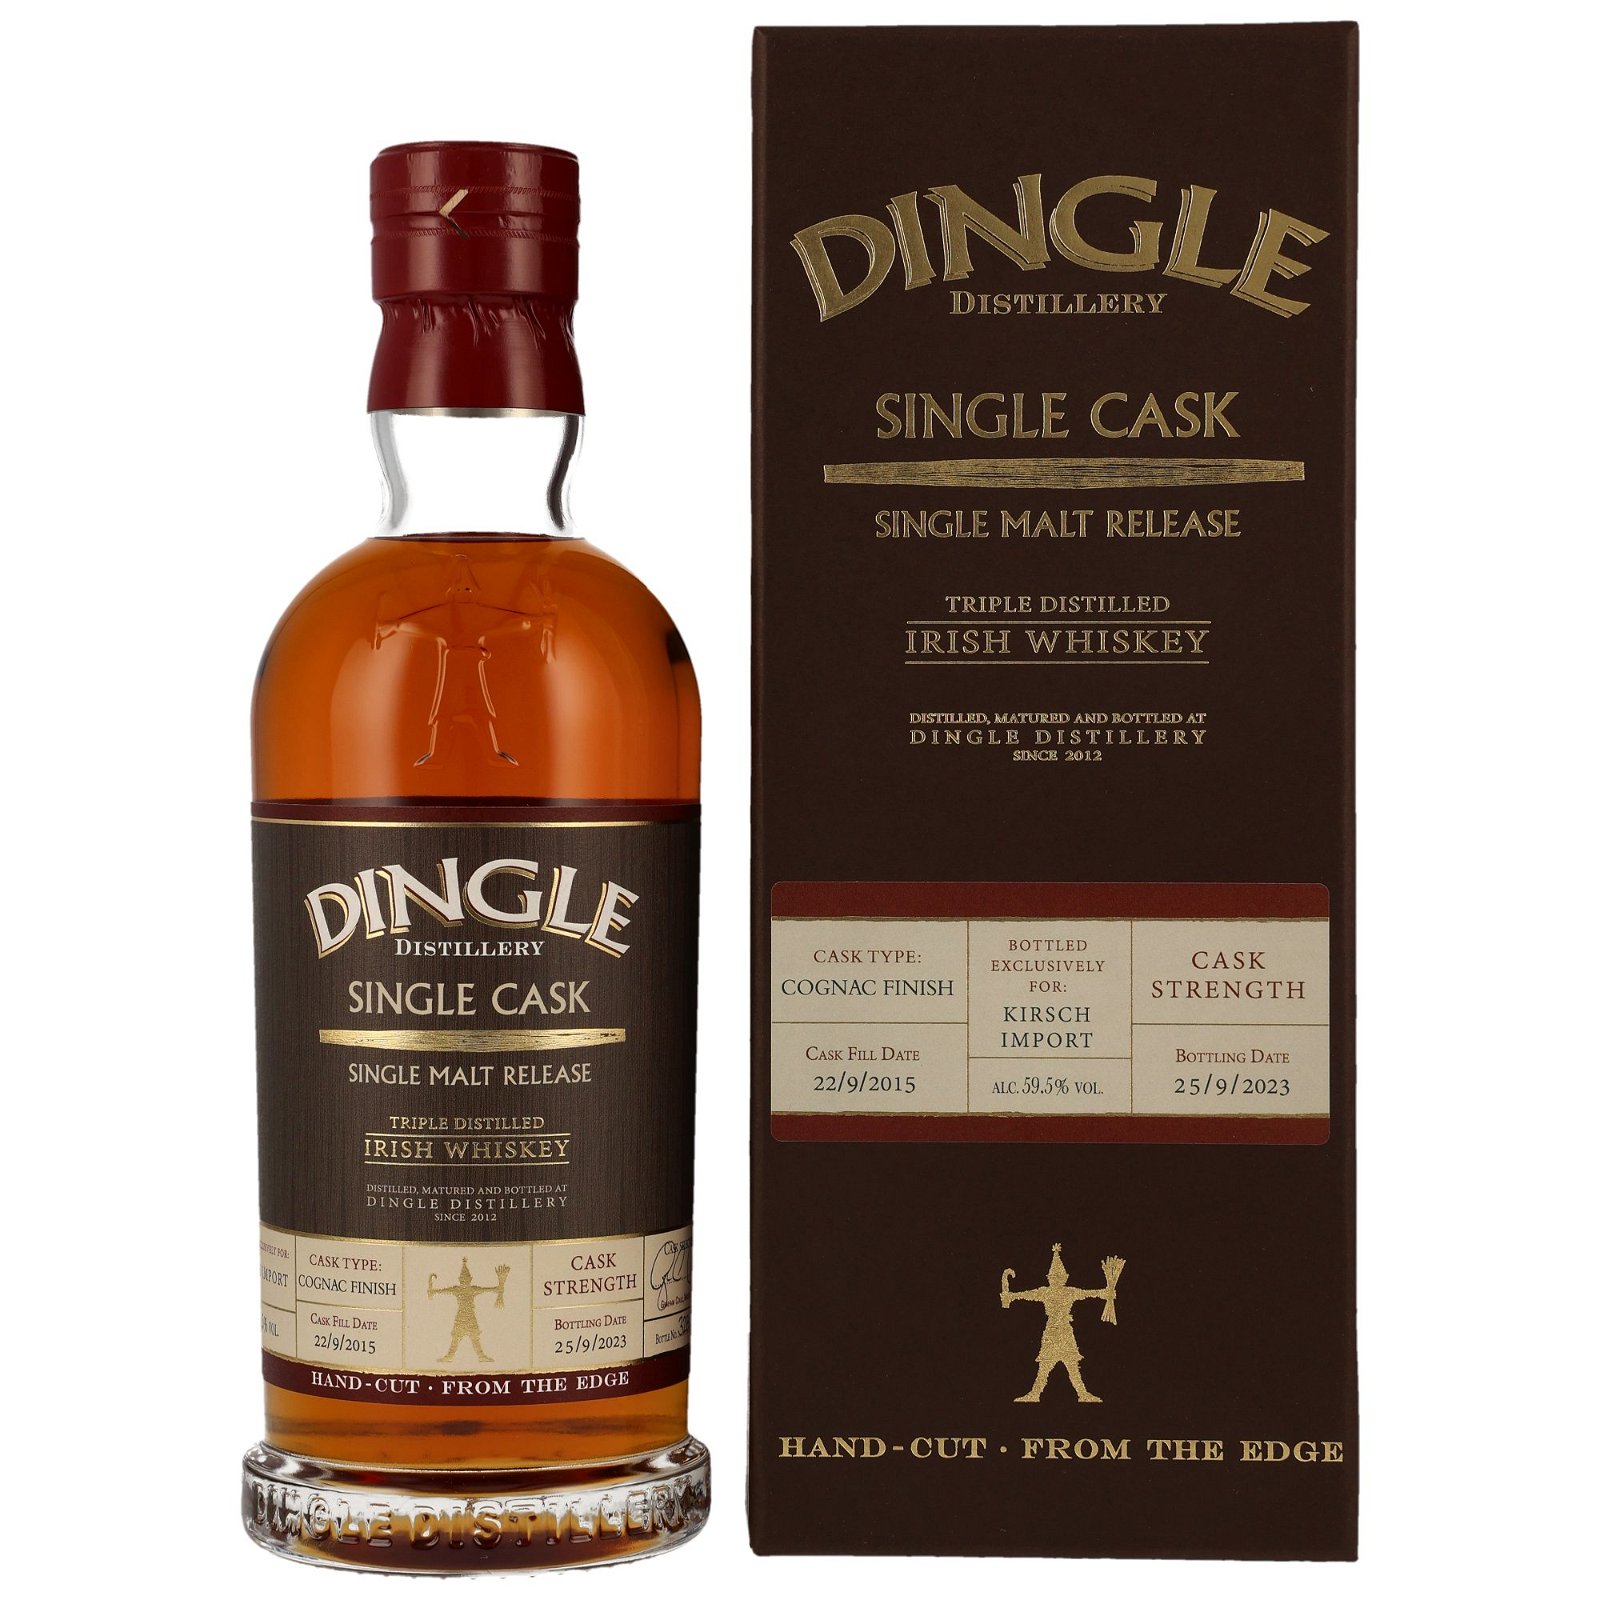 Dingle 2015/2023 Cognac Finish Single Cask